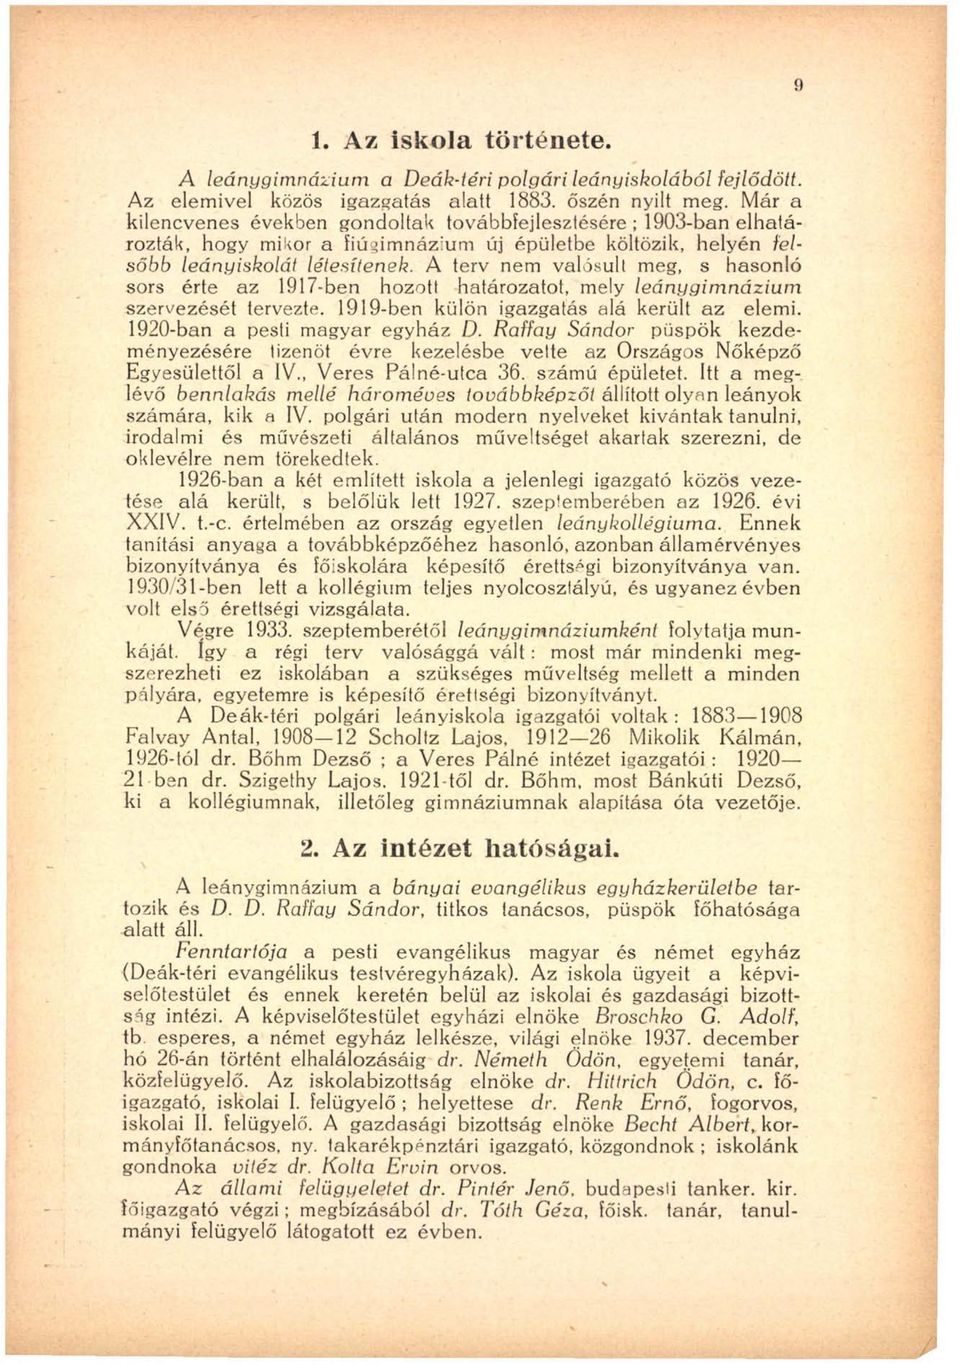 A terv nem valósult meg, s hasonló sors érte az 1917-ben hozott határozatot, mely leánygim názium szervezését tervezte. 1919-ben külön igazgatás alá került az elemi. 1920-ban a pesti magyar egyház D.